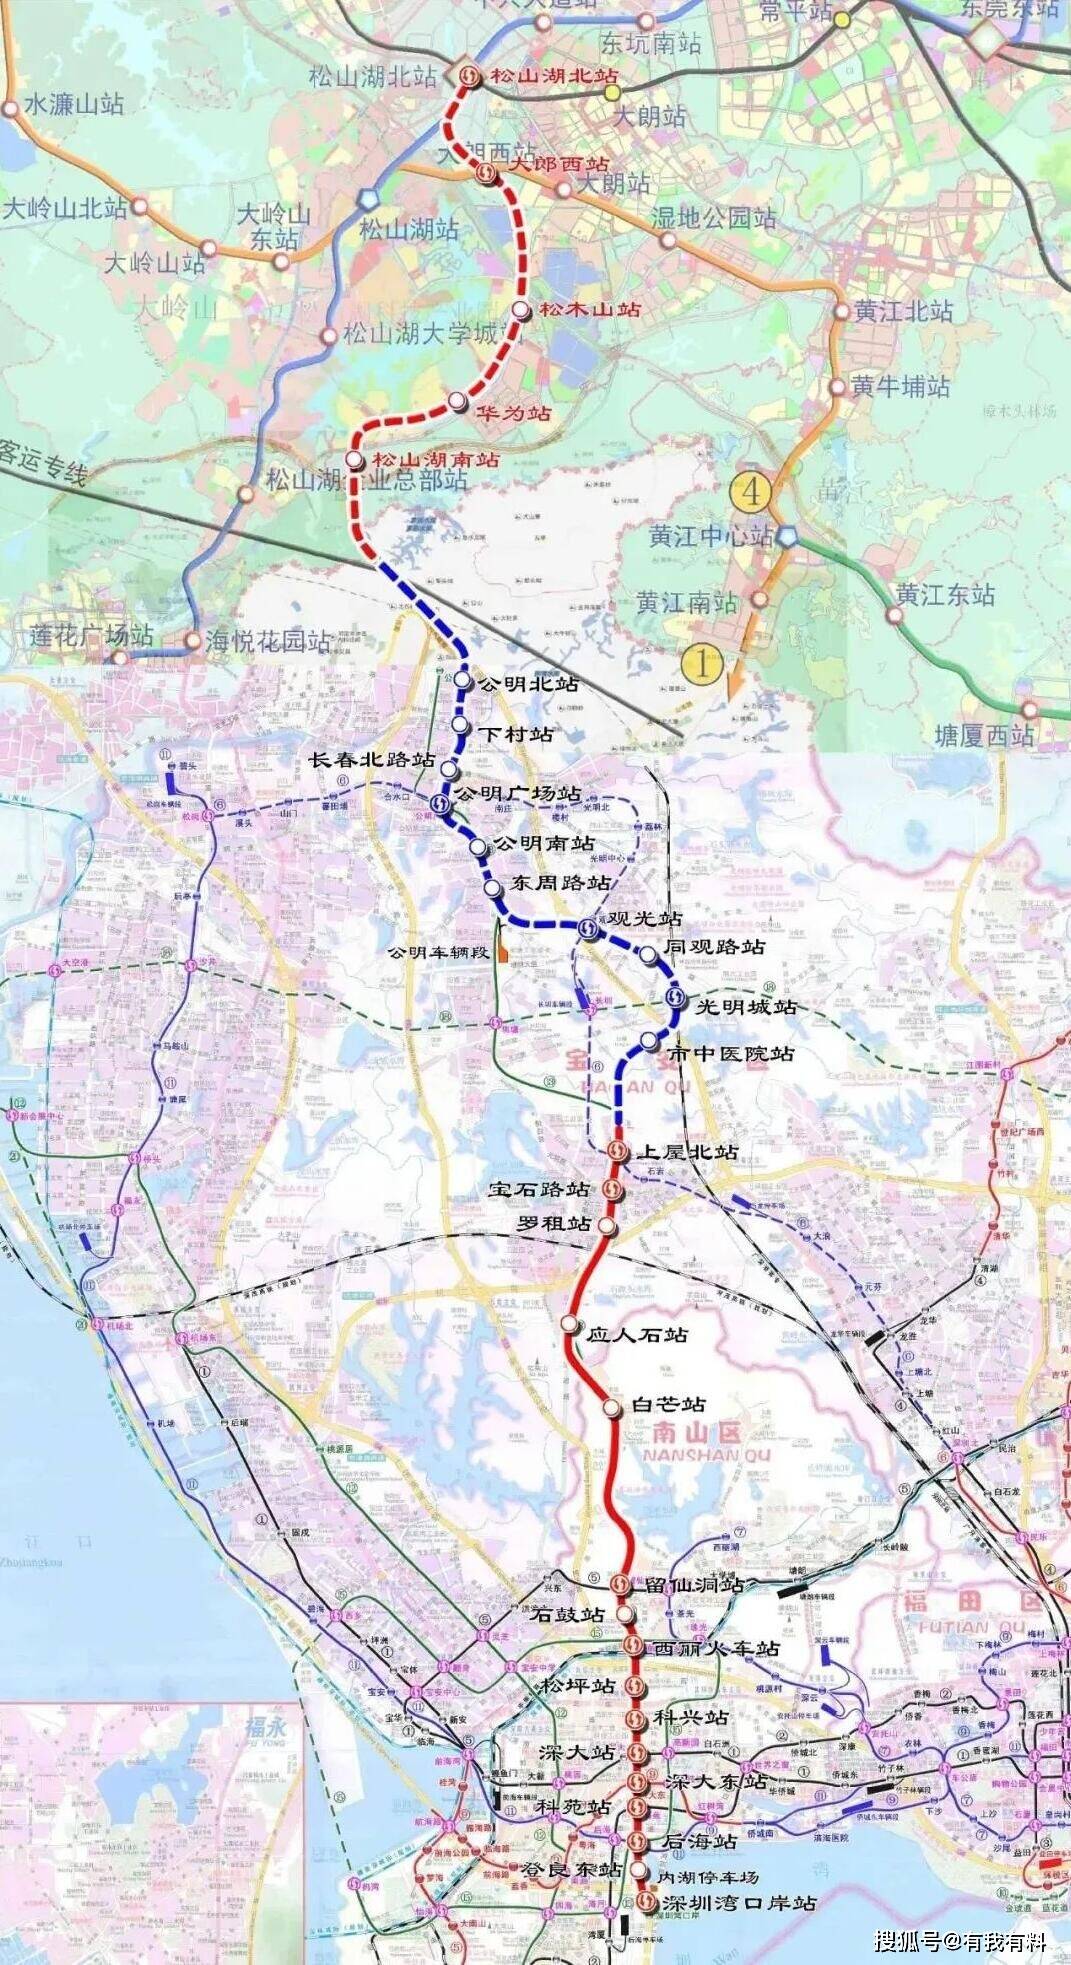 原创网友深圳地铁13号线能正常在明年通车